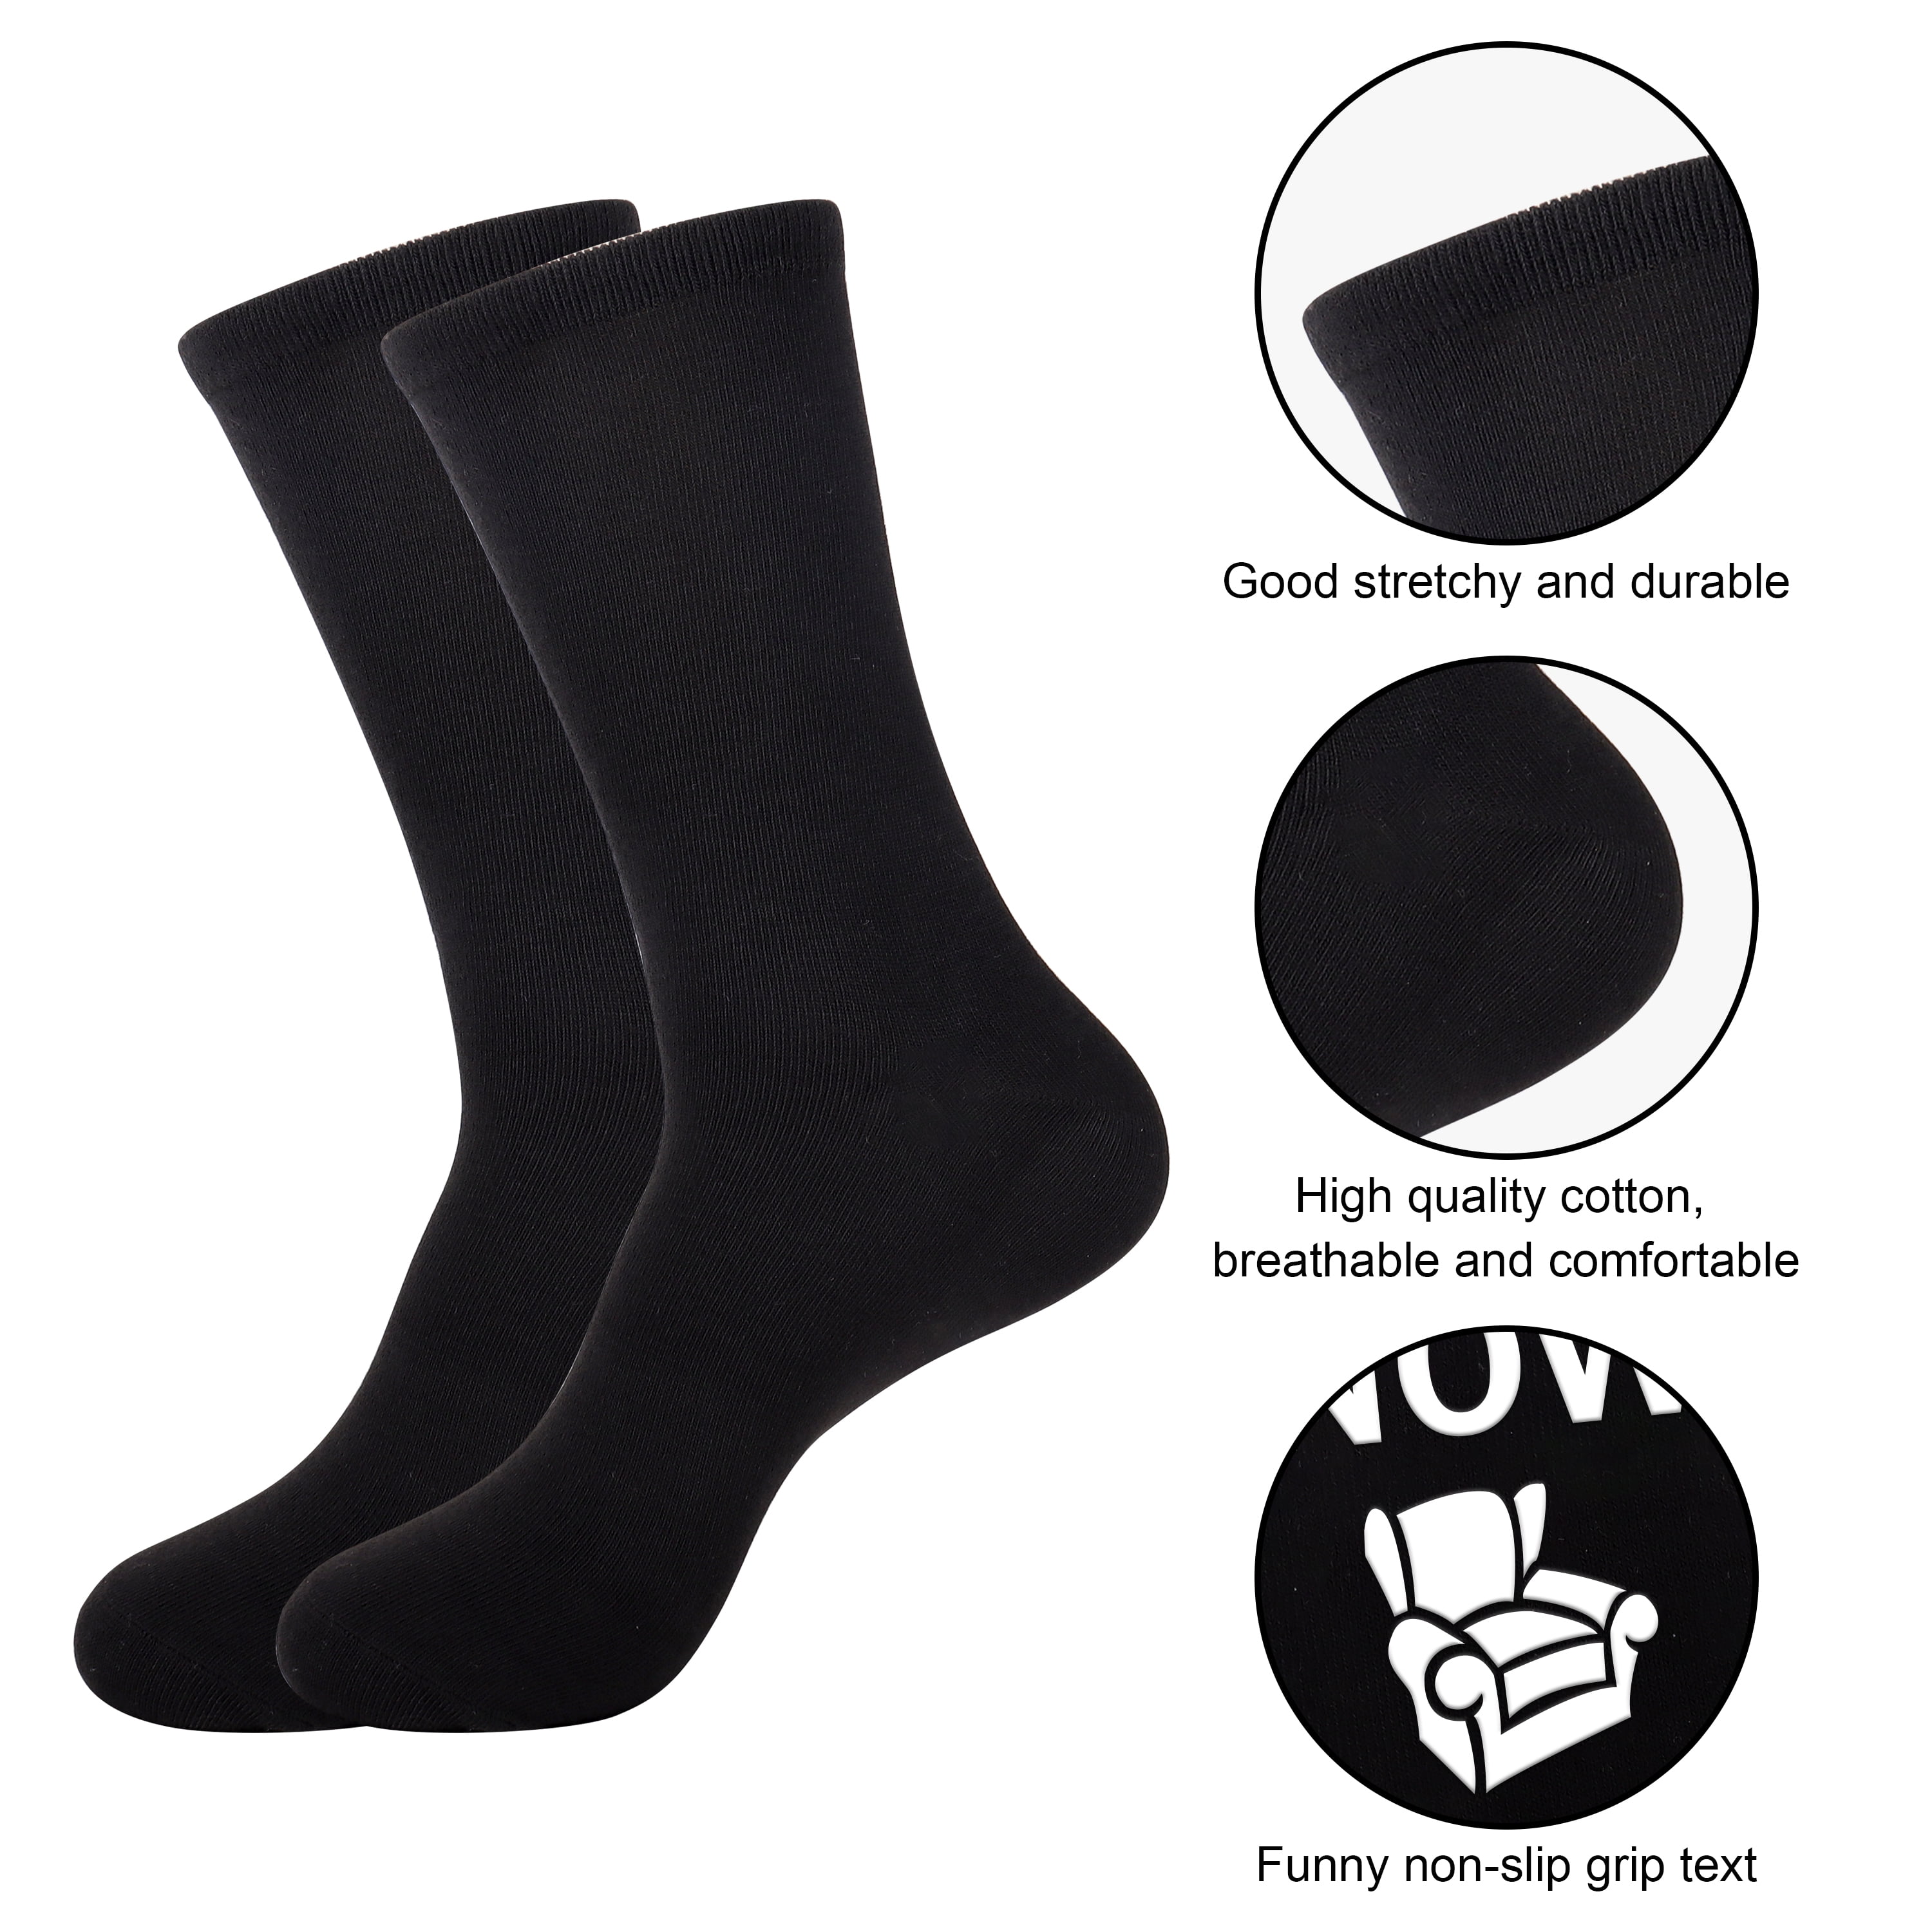 Belloxis Gym Gifts for Men Gym Socks Mens Socks Gifts for Gym Lovers Men  Cozy Socks Comfy Socks Crew Socks for Men Black Socks Cotton Socks Gifts  for Men at  Men's